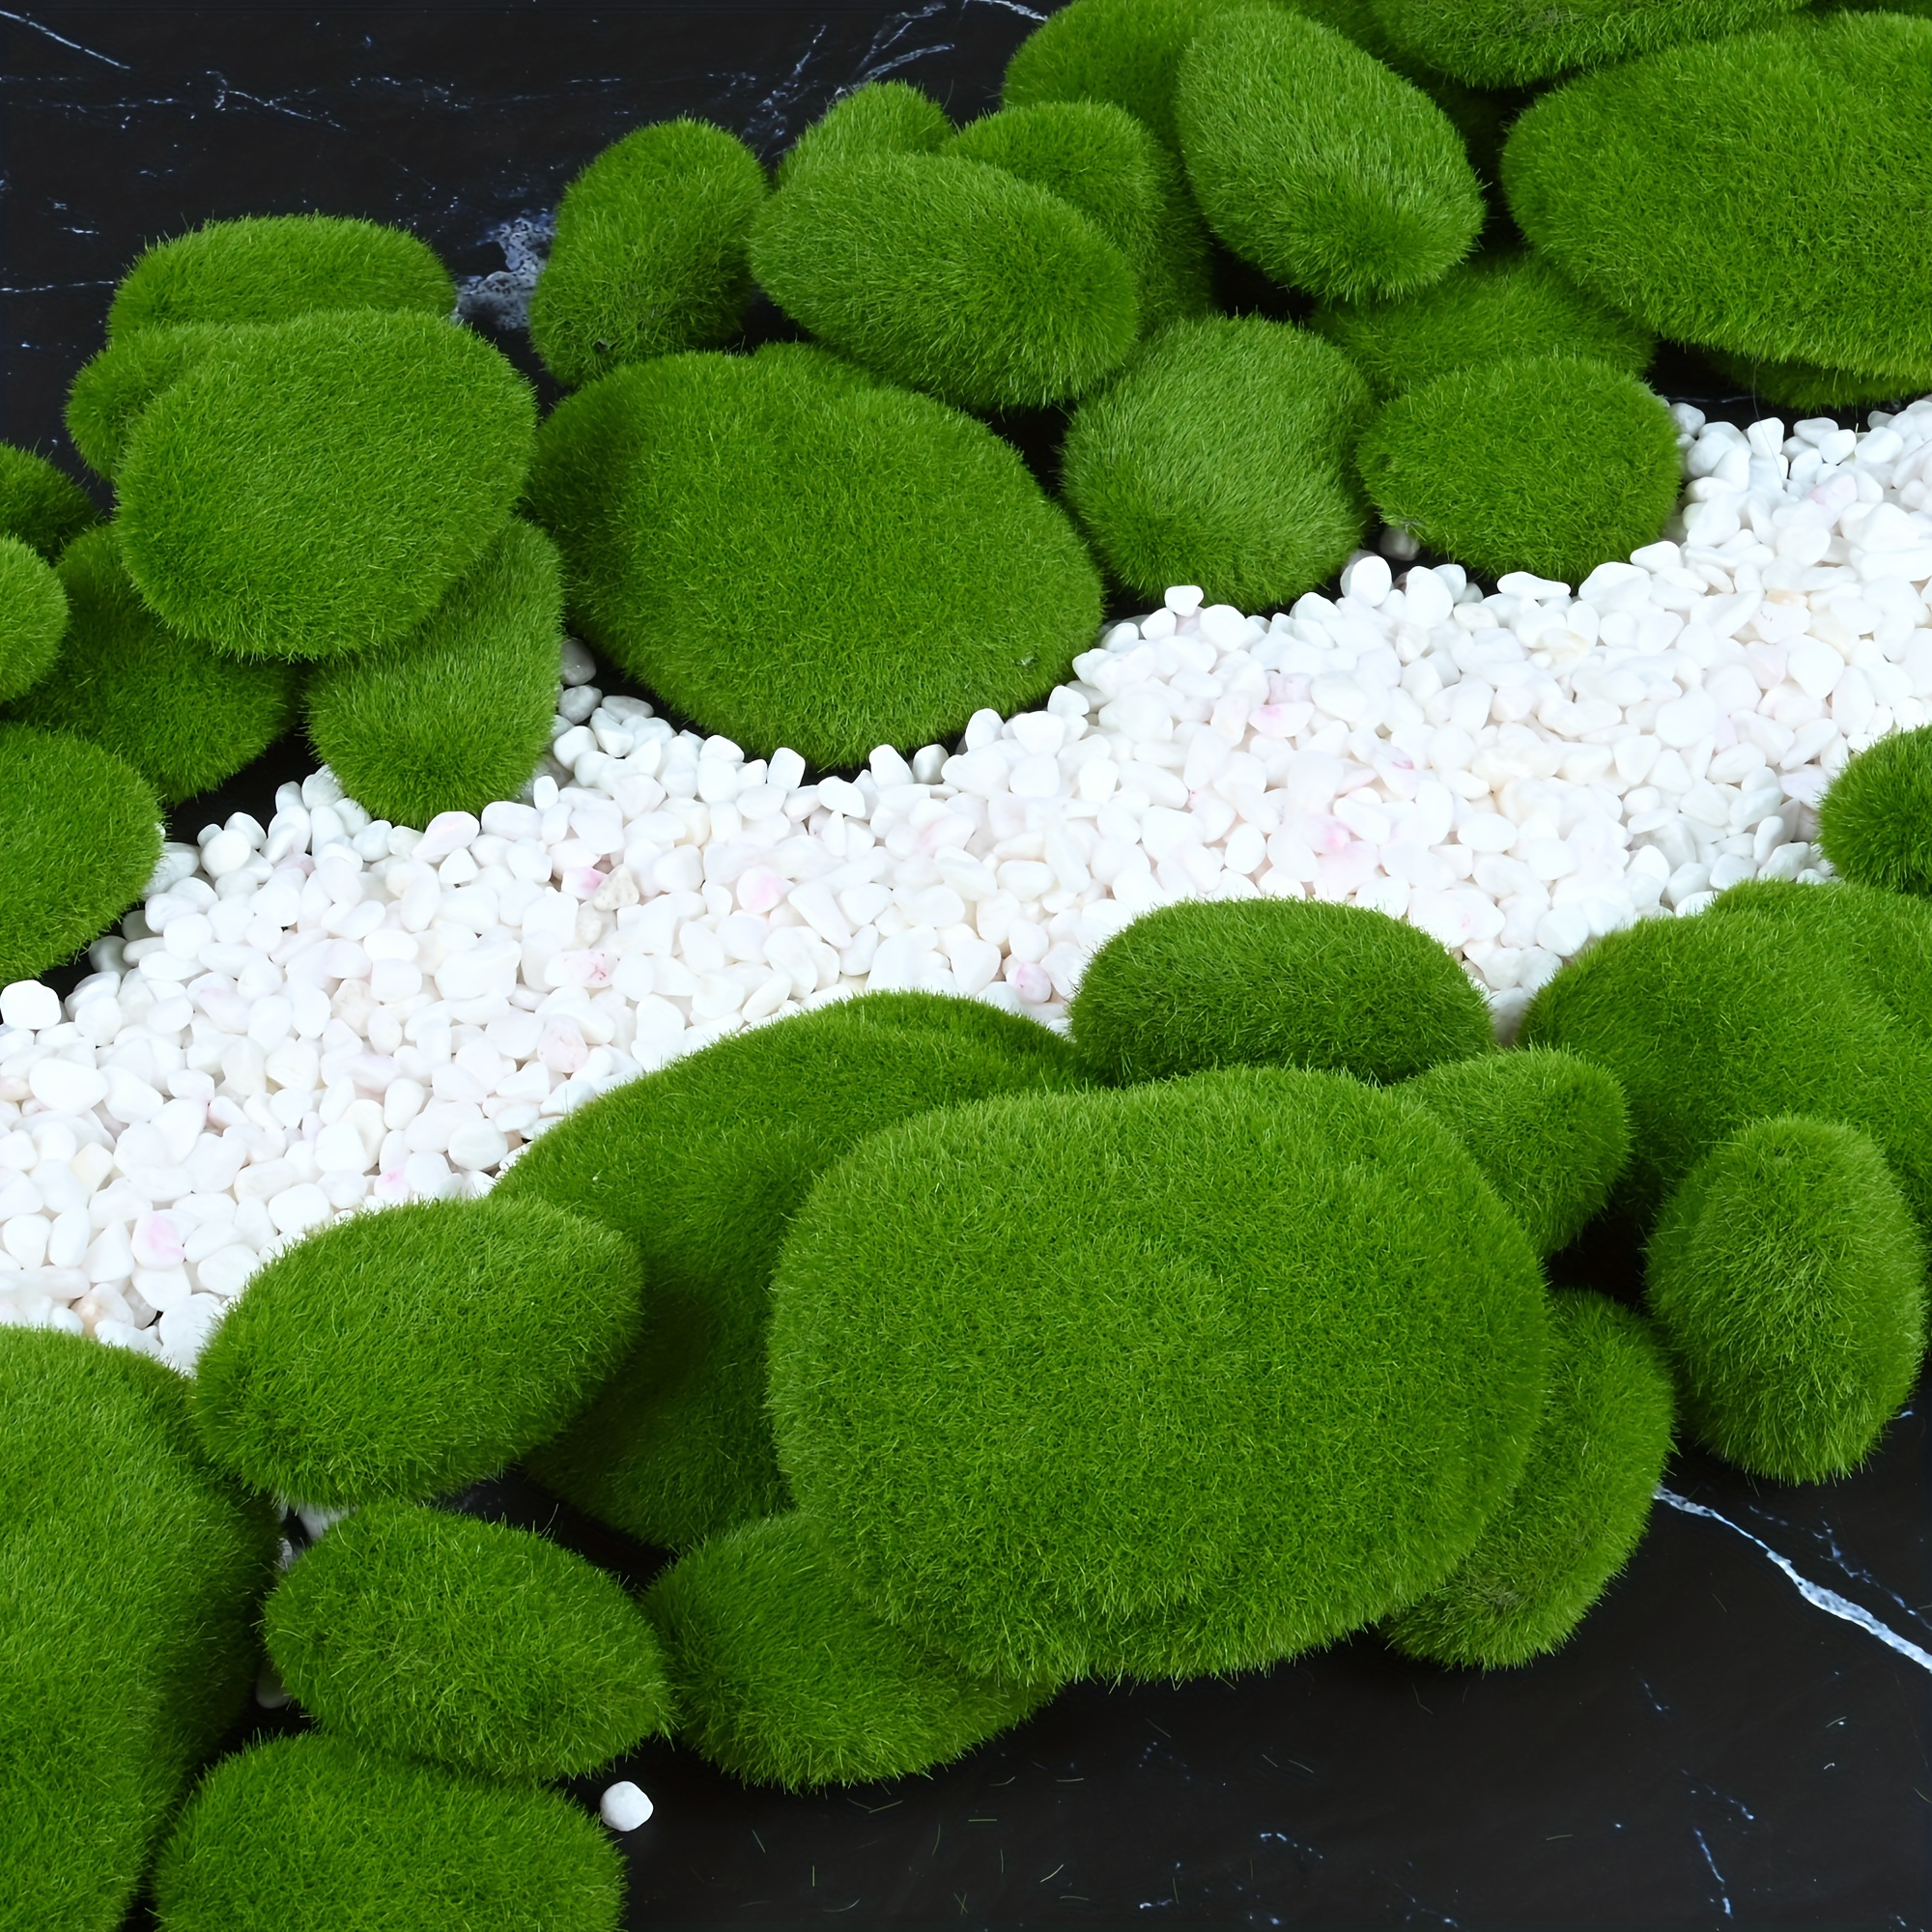 Artificial Moss Rocks Decorative, 30 Pcs 3 Size Green Moss Balls